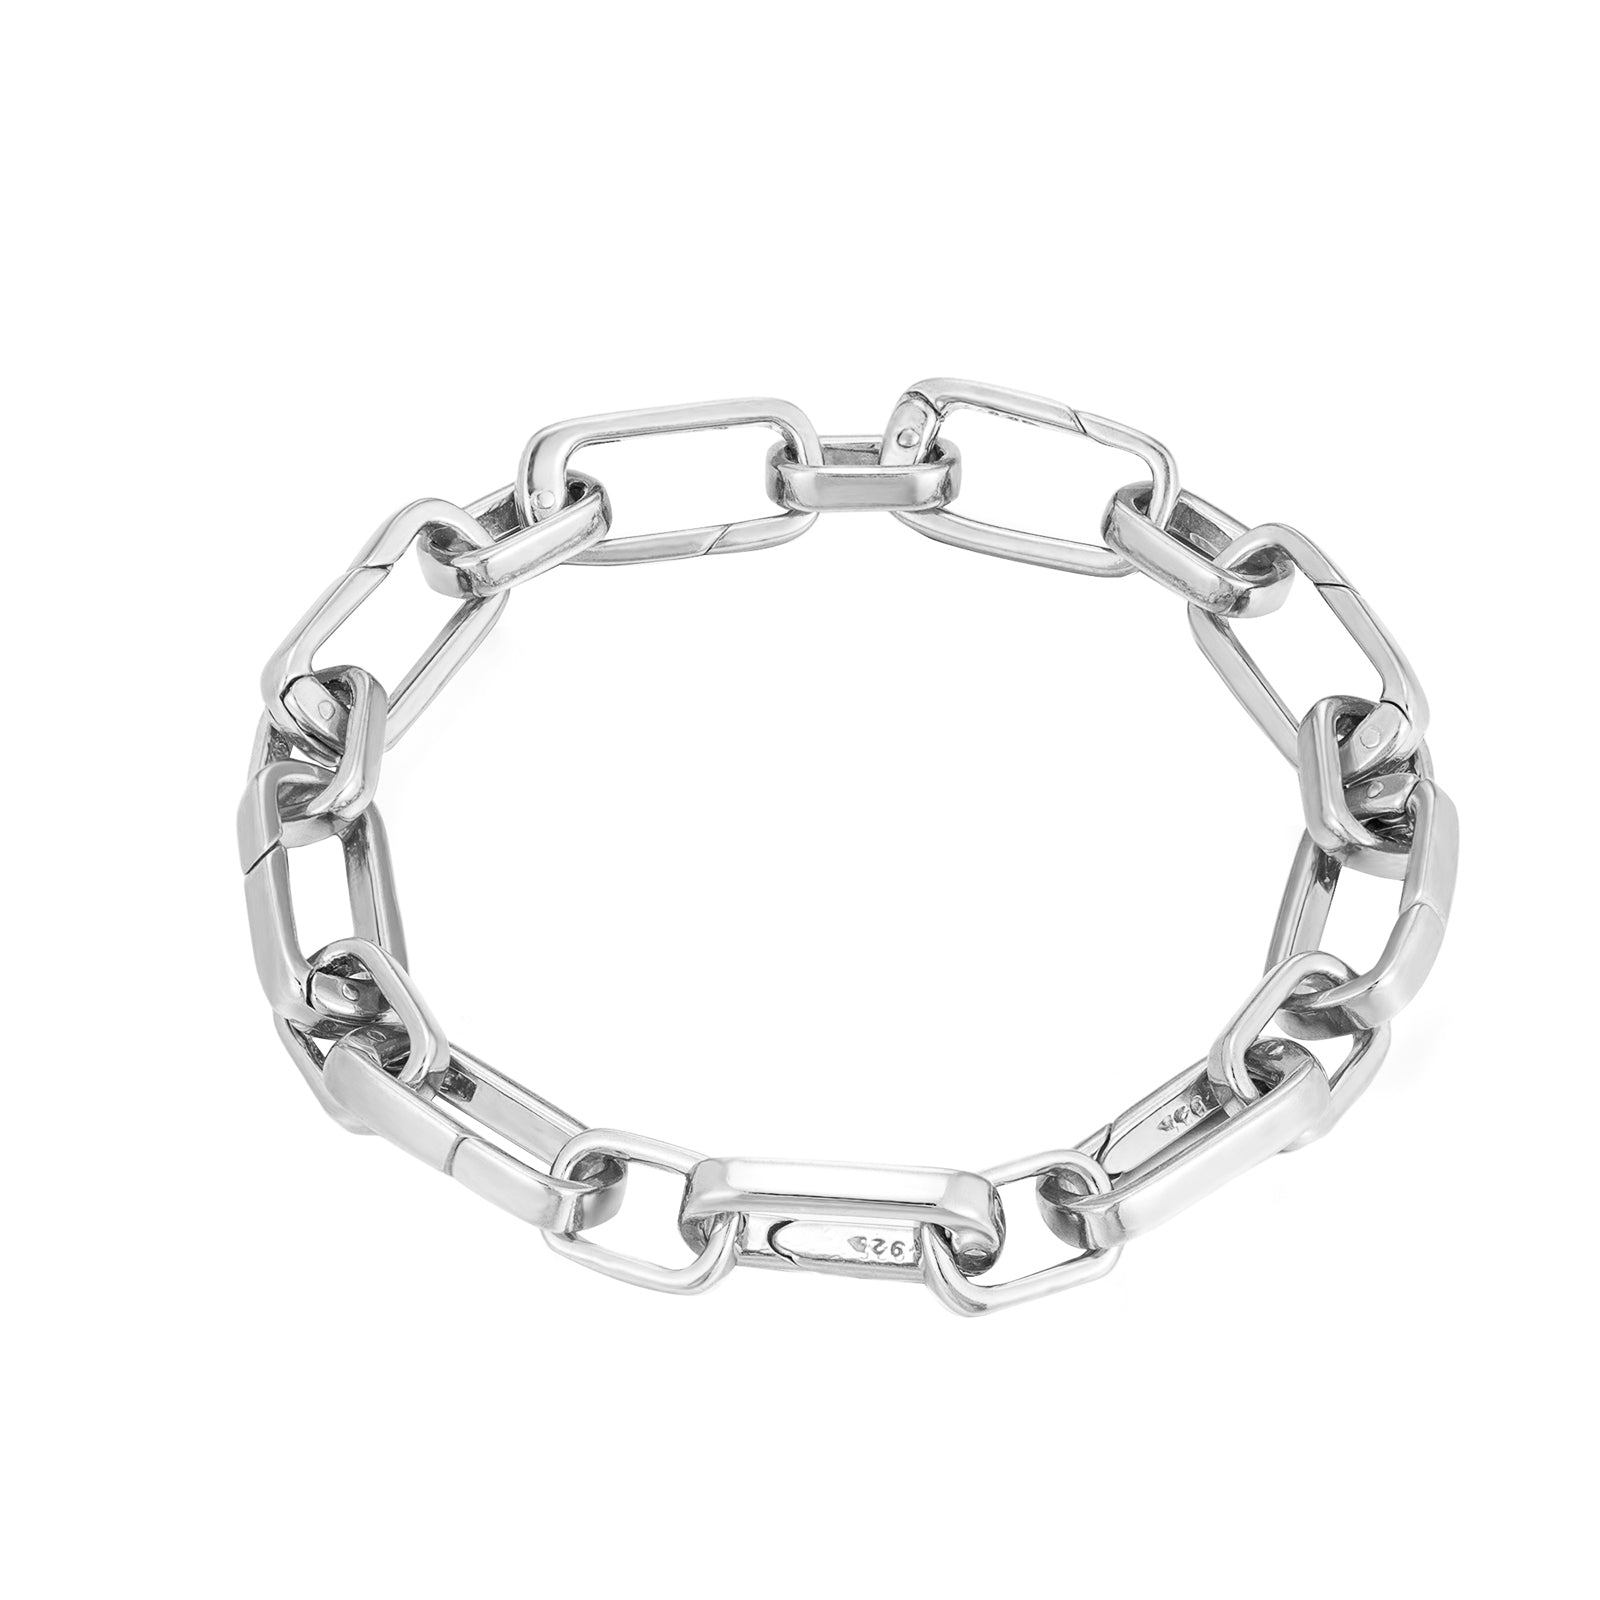 Seol Gold - Interlock Chain Bracelet